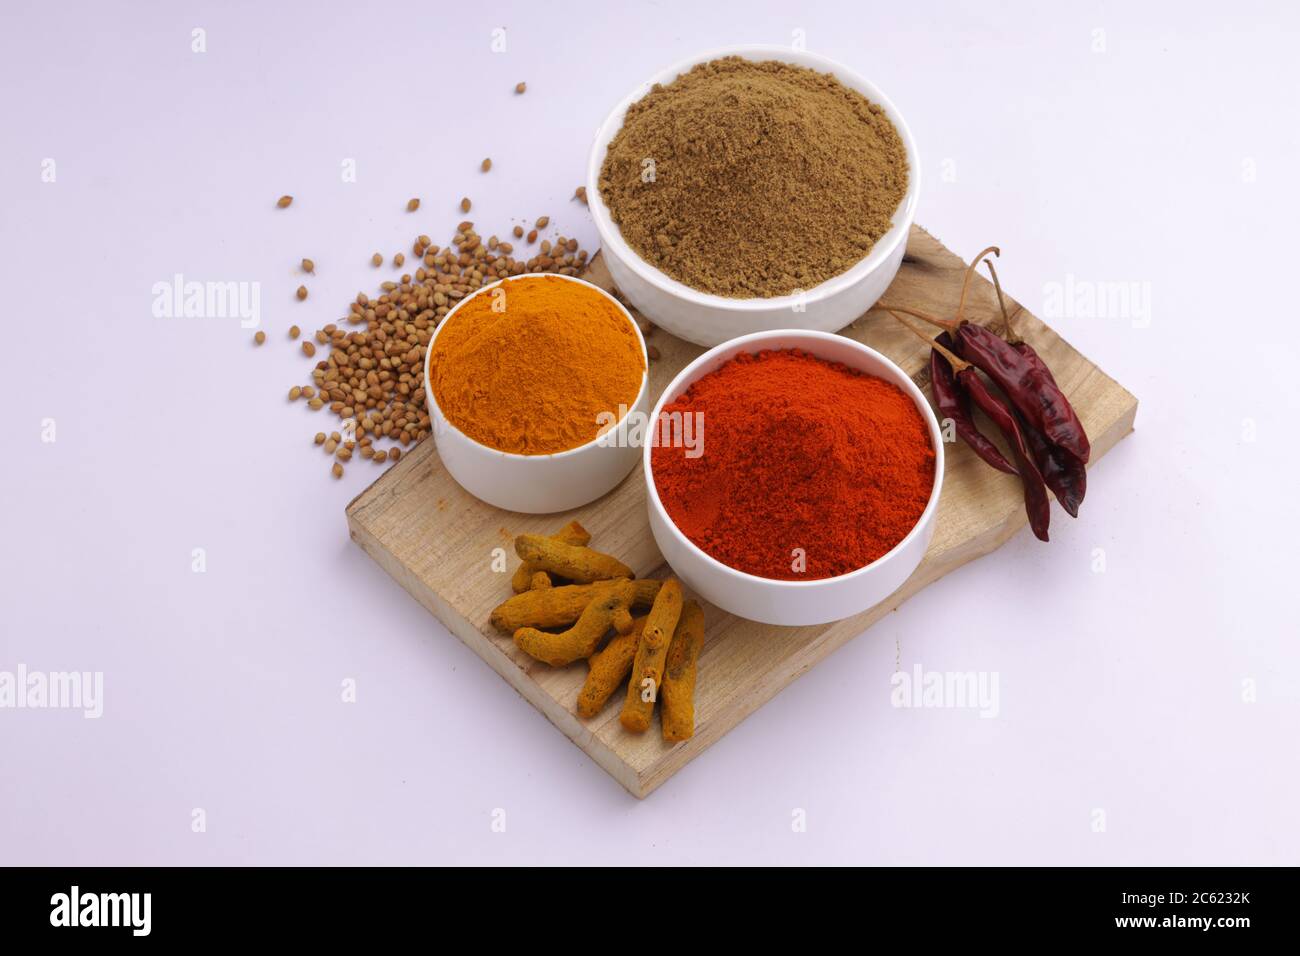 Épices indiennes Chili, Turmeric et Coriander sont les trois épices de base utilisées pour le curry indien ou les plats, disposés dans des bols blancs Banque D'Images